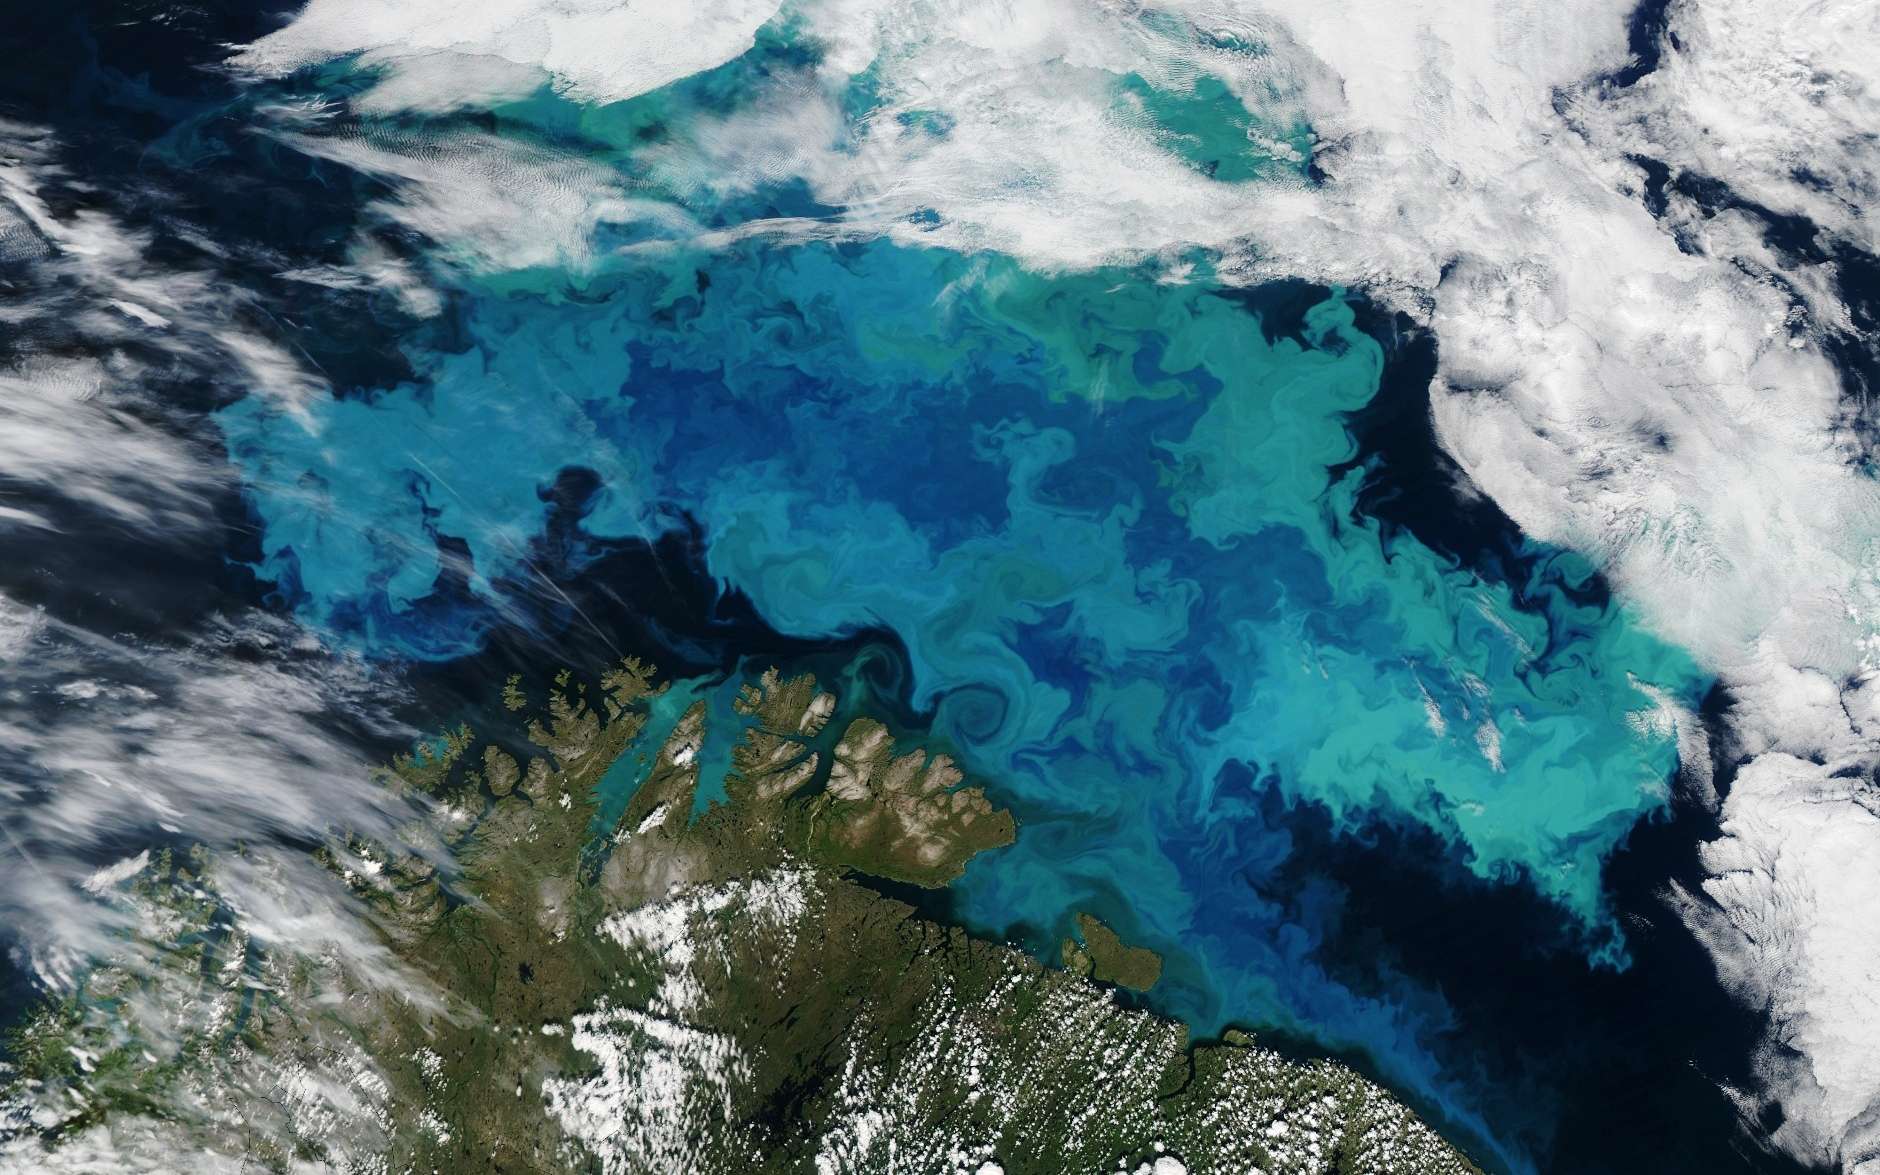 La mer de Barents observée depuis l'espace en été. Les eaux turquoise indiquent la présence d'un boom planctonique avec d'importantes populations de Coccolithophoridés, ces algues unicellulaires qui s'entourent d'une coquille de calcaire réfléchissant la lumière du Soleil. © Jeff Schmaltz, Nasa Earth Observatory